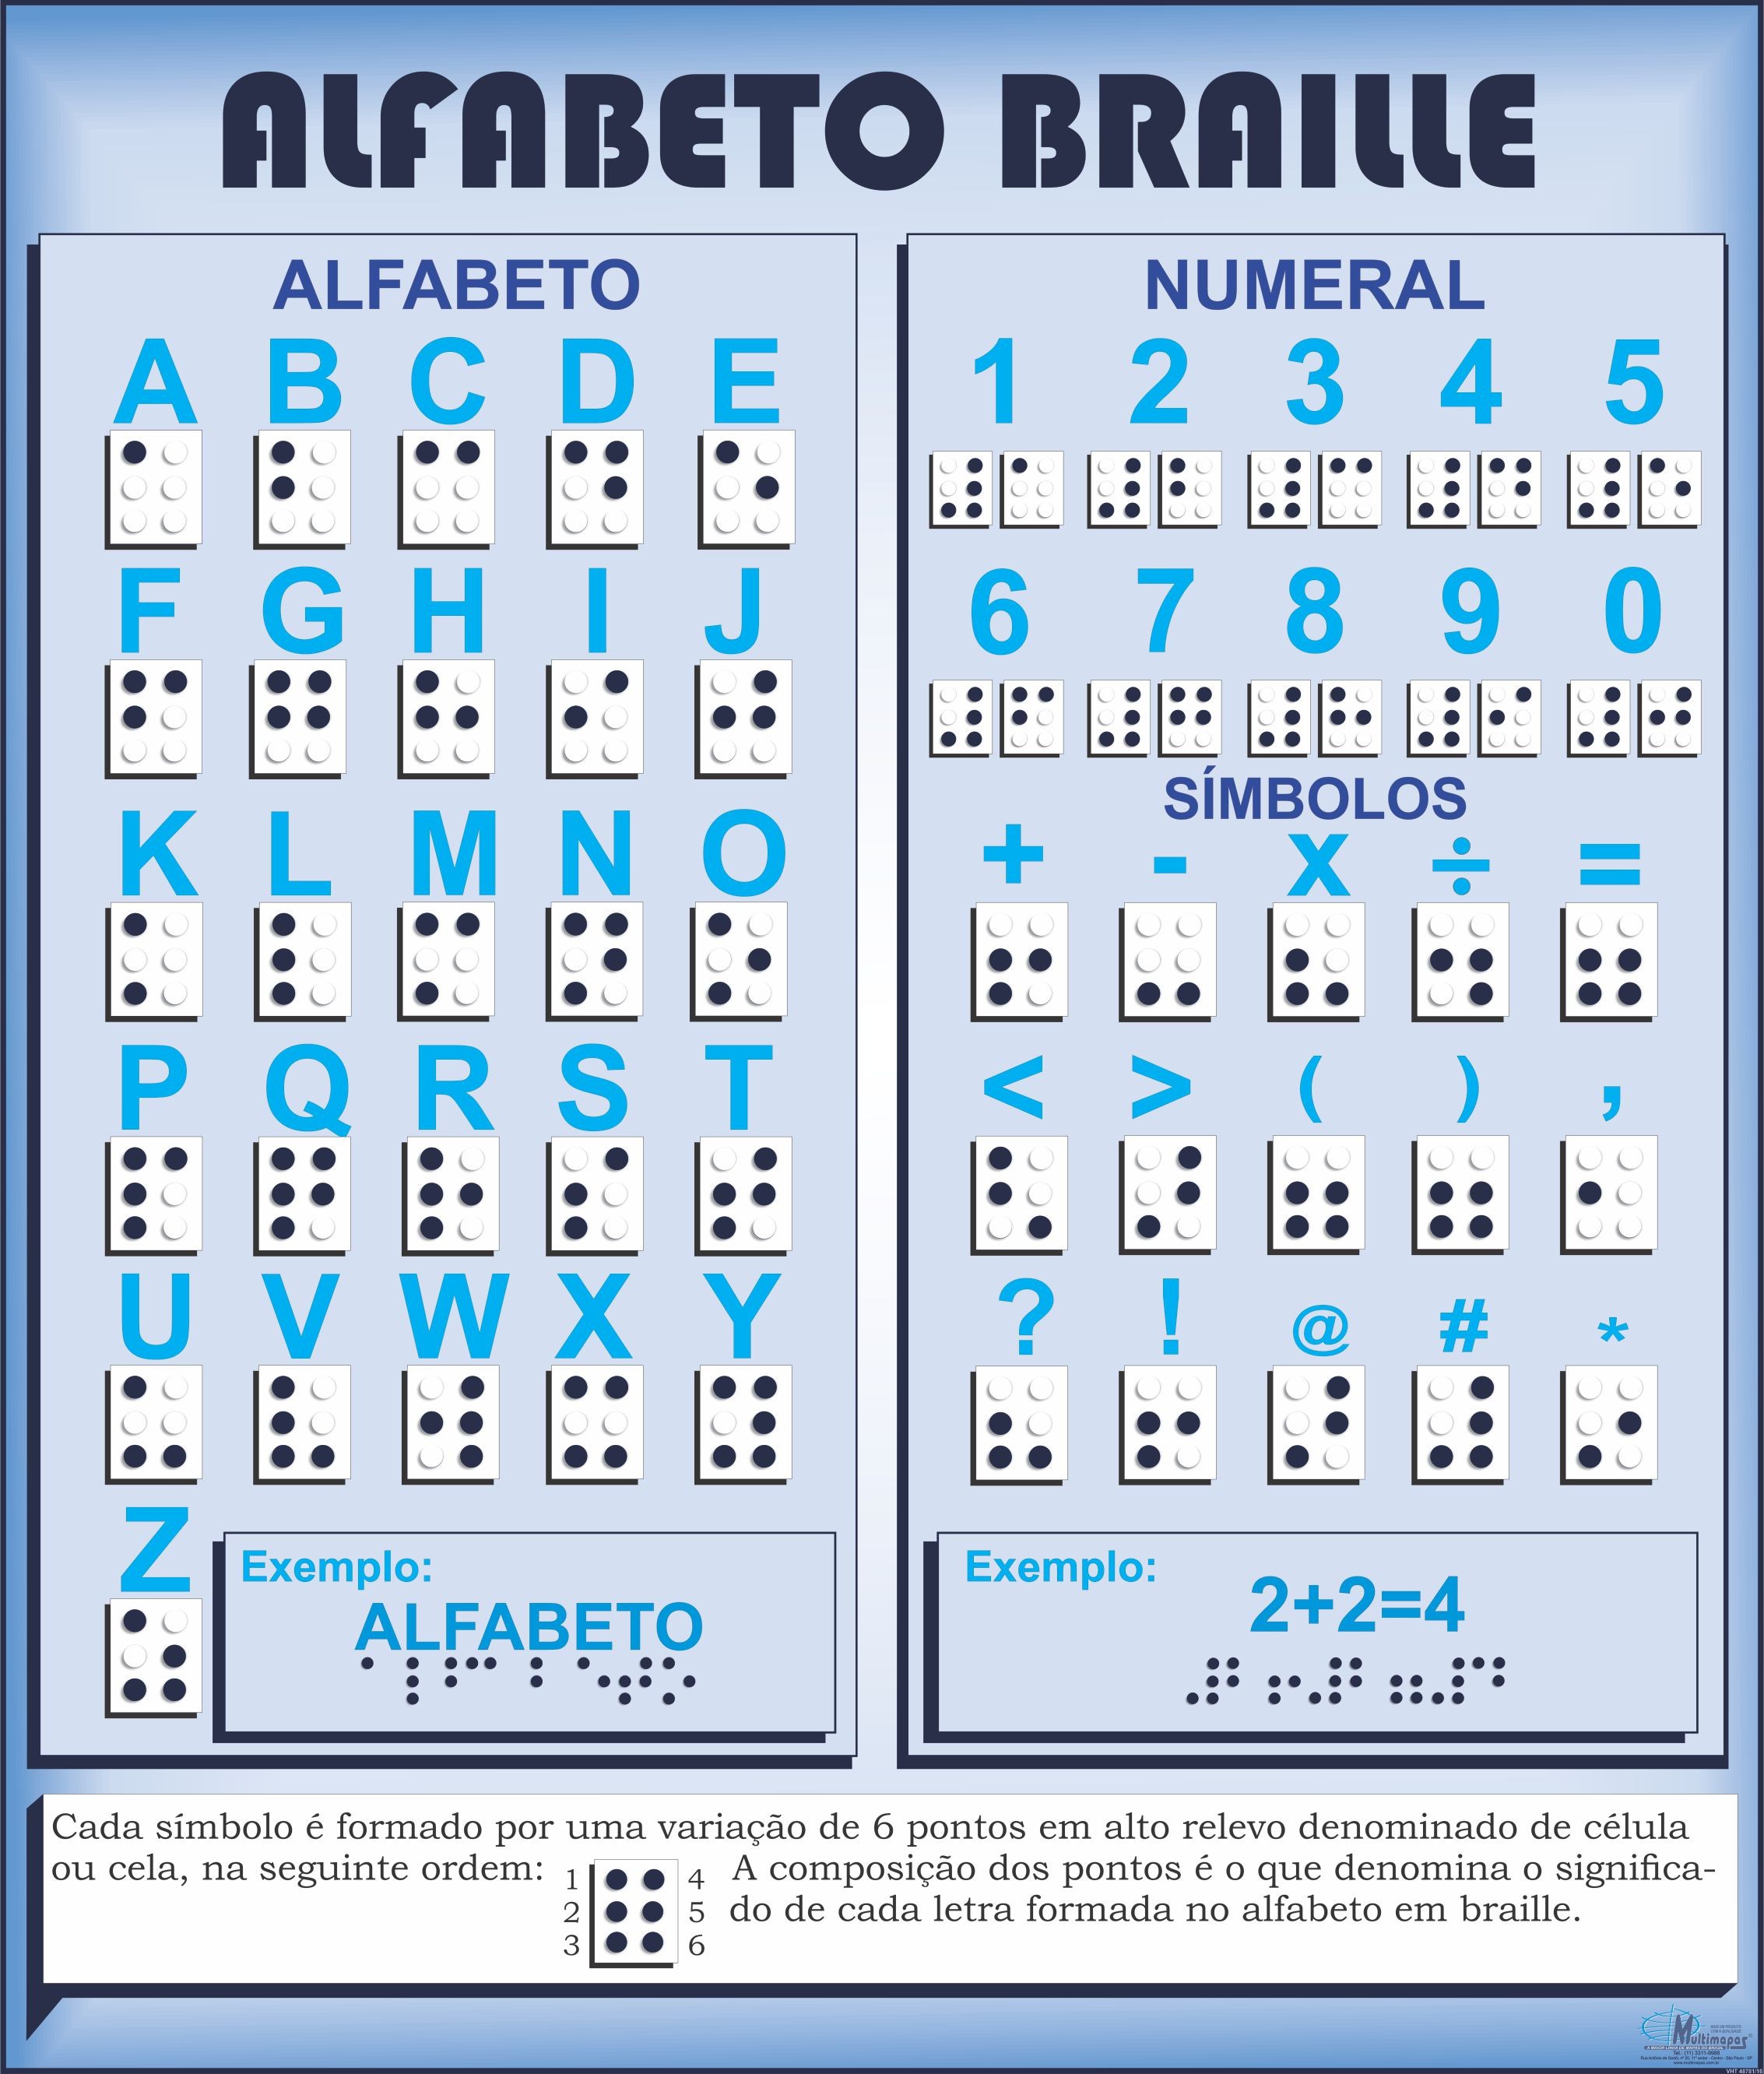 Resultado de imagem para Alfabeto em braille